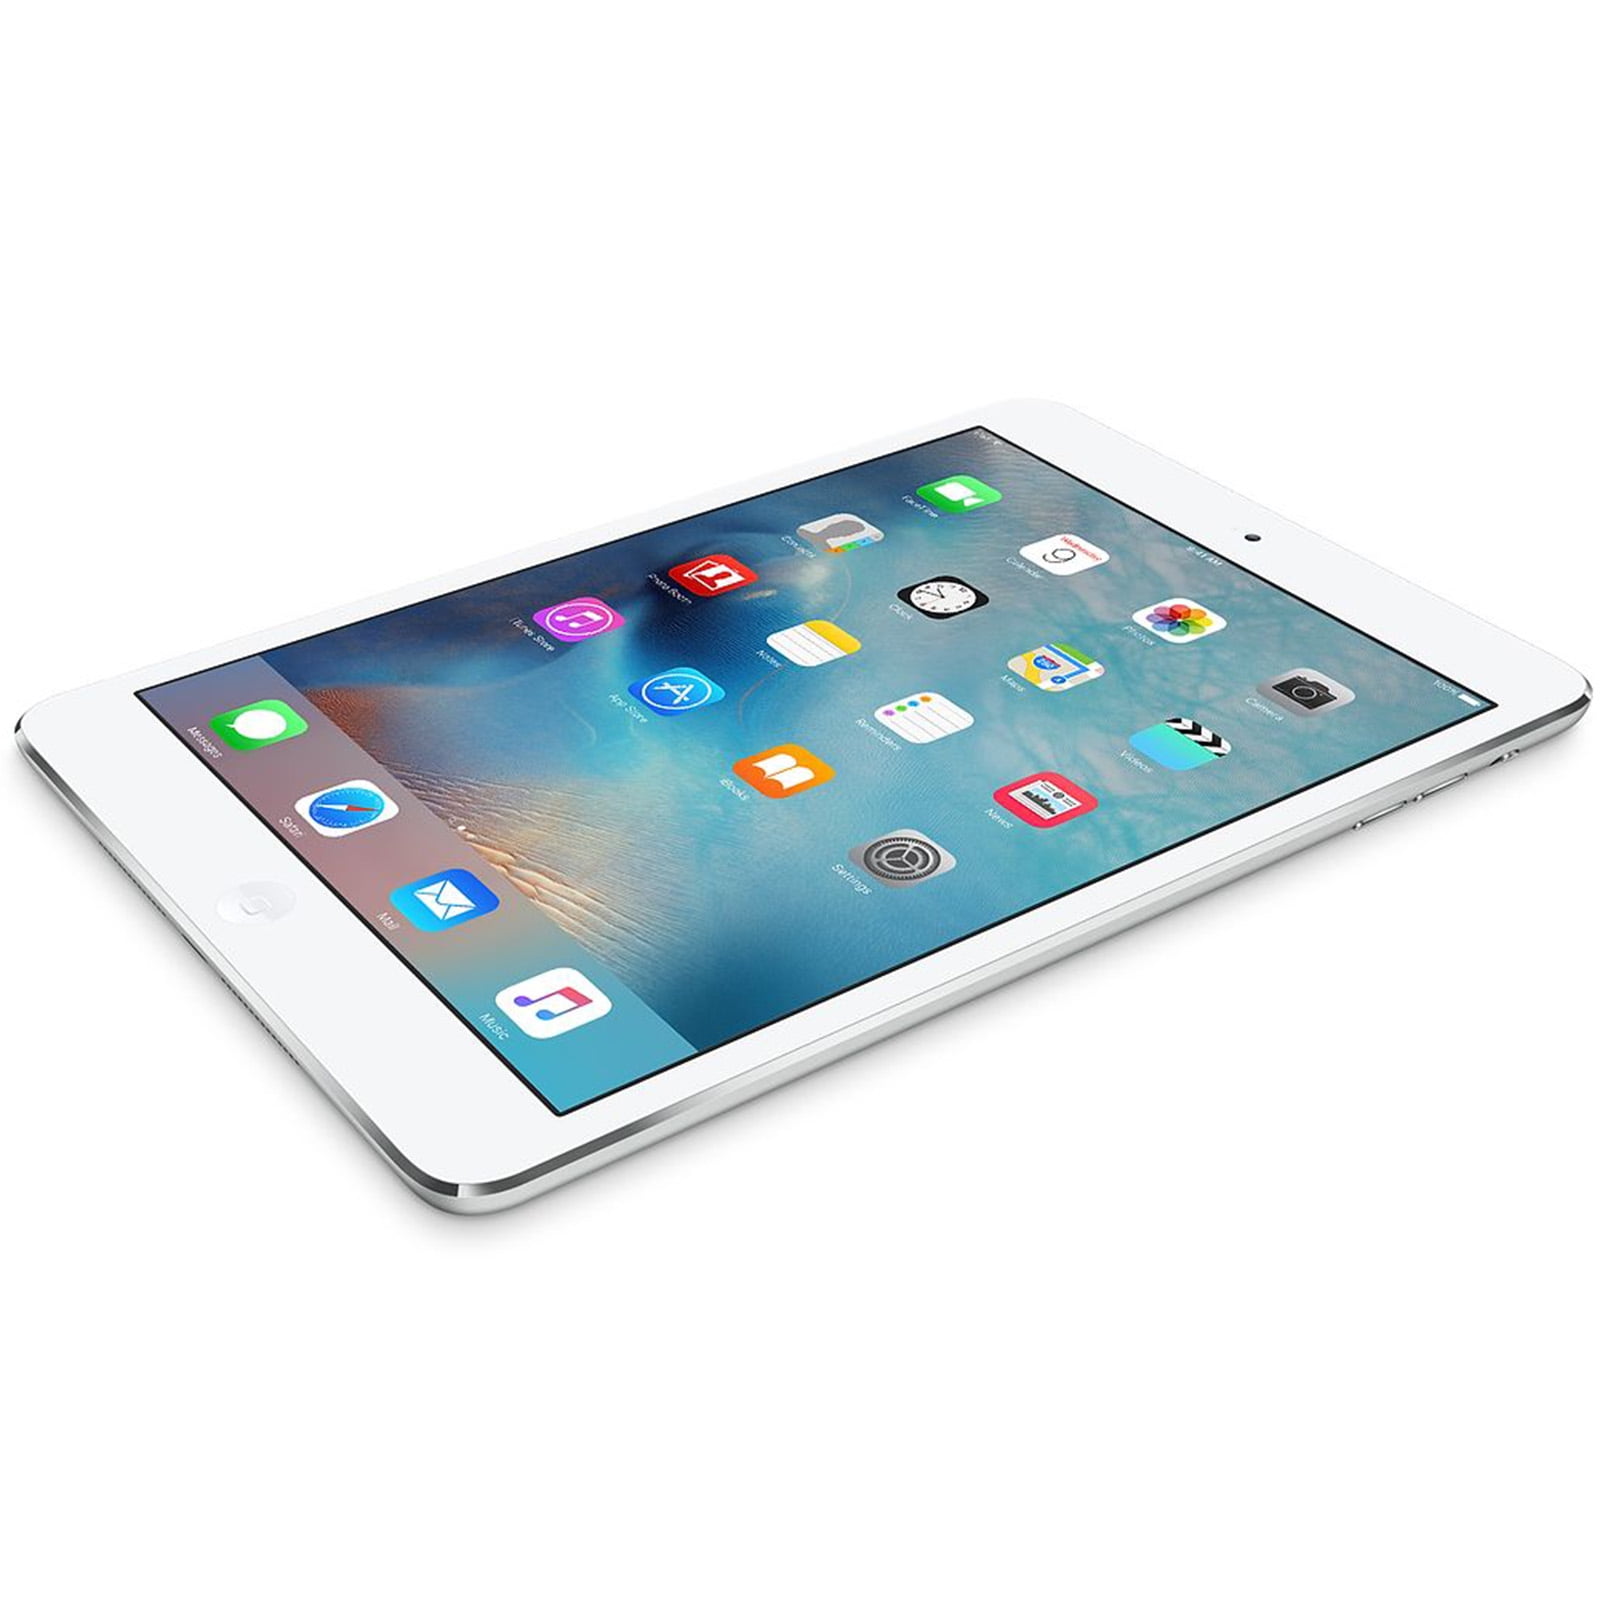 Apple 7.9-inch Retina iPad Mini 2 Wi-Fi Only, 16GB, 1 Year 